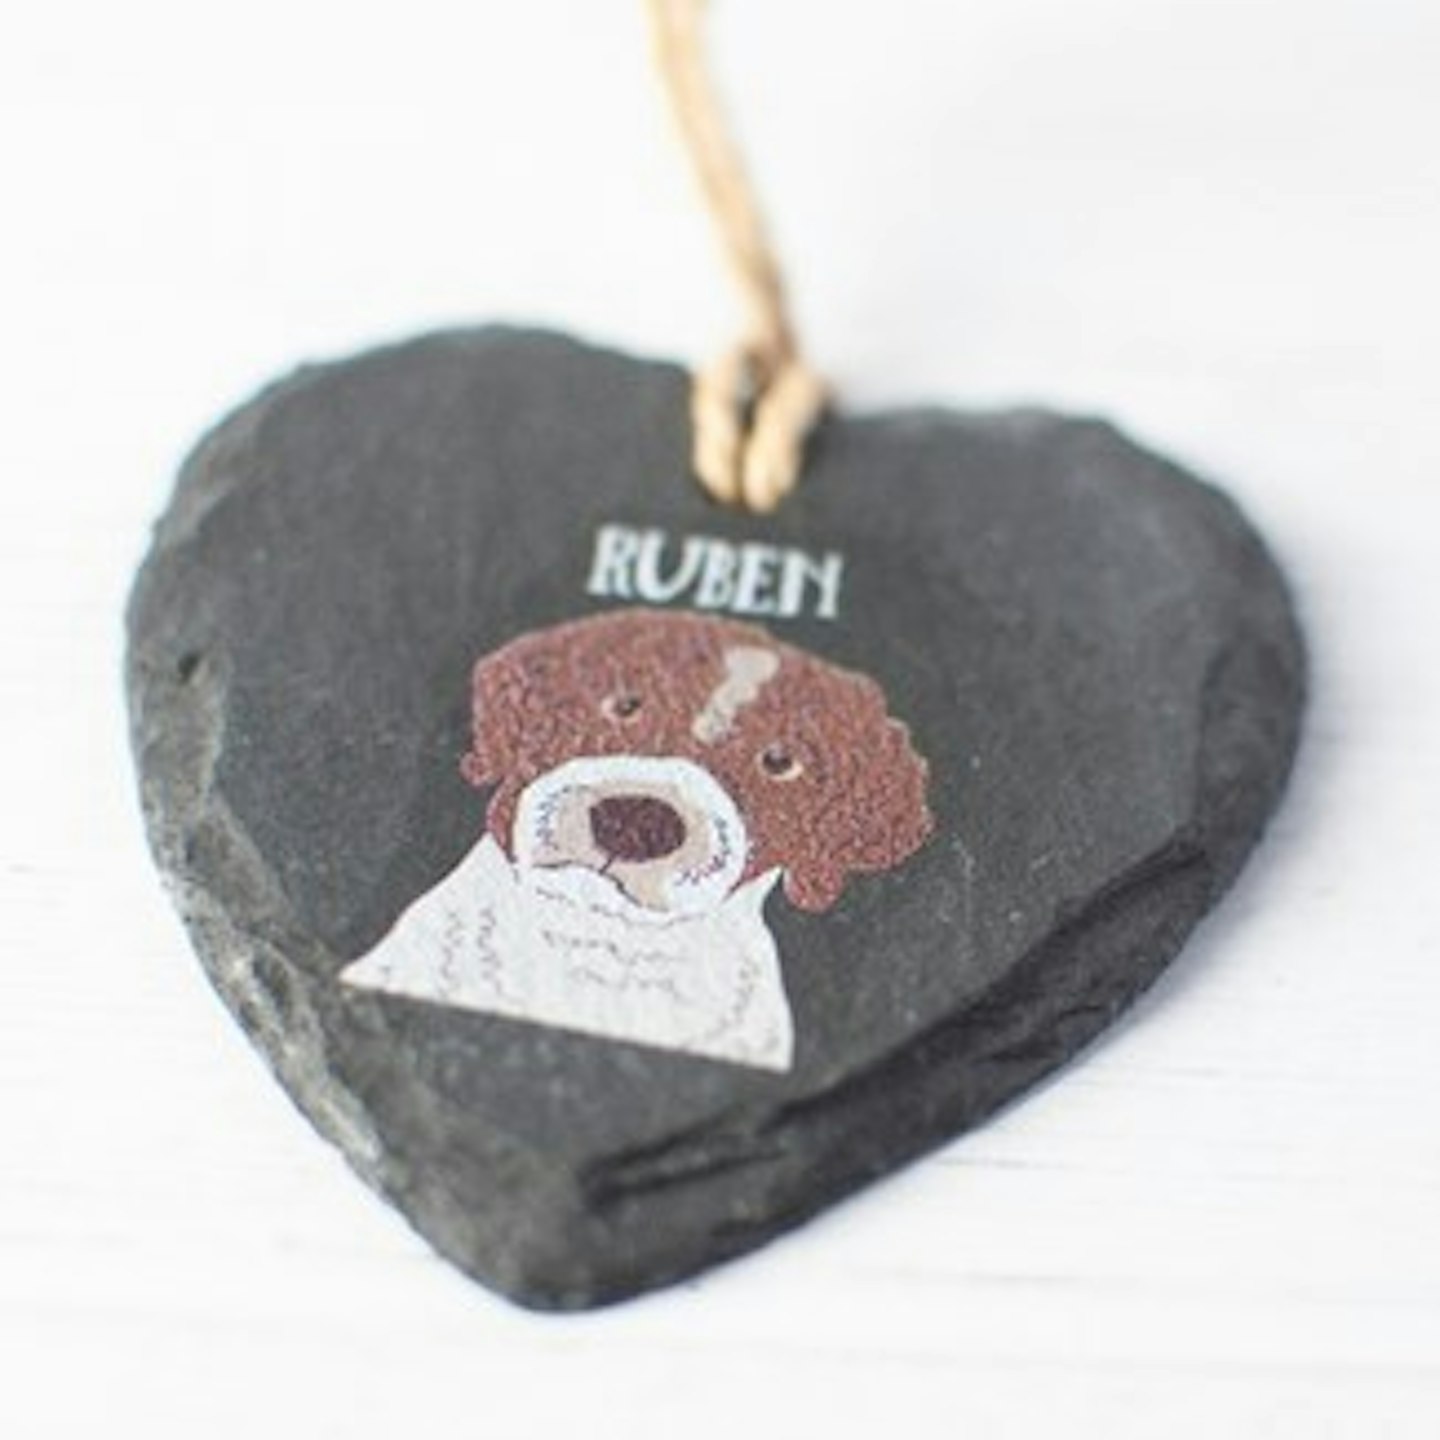 Personalised dog slate heart keepsake